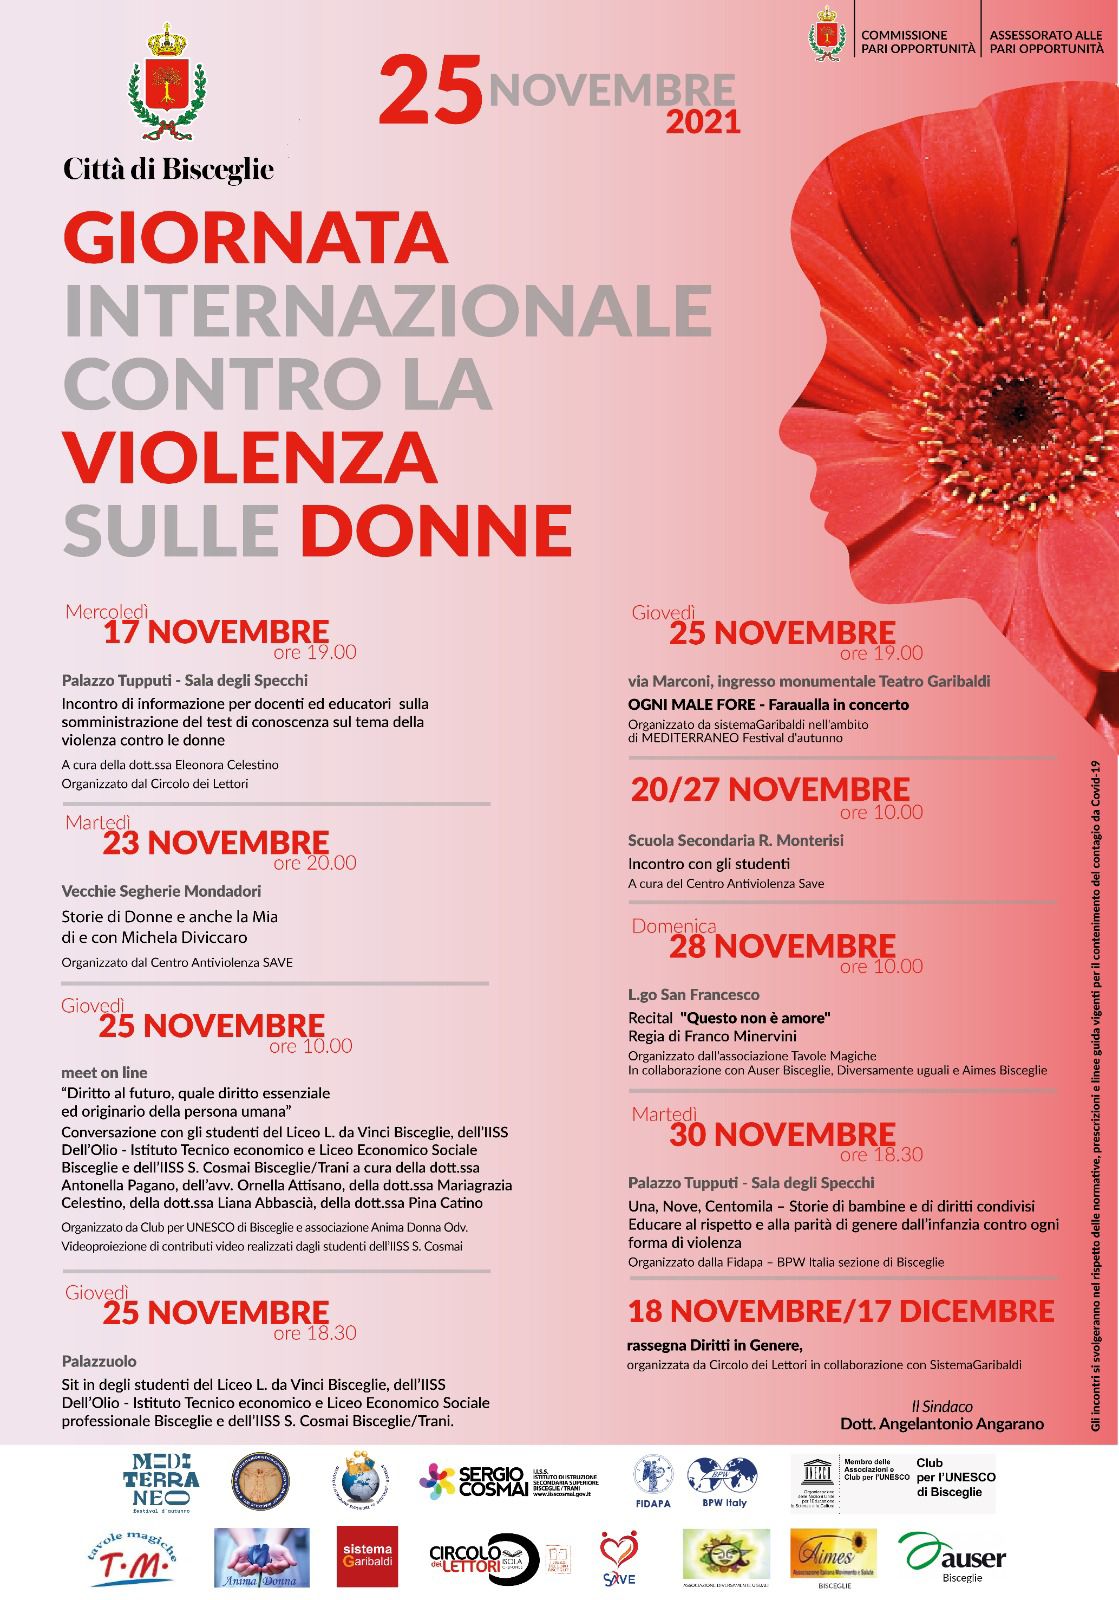 Giornata internazionale contro la violenza sulle donne - giovedì 25 novembre 2021.